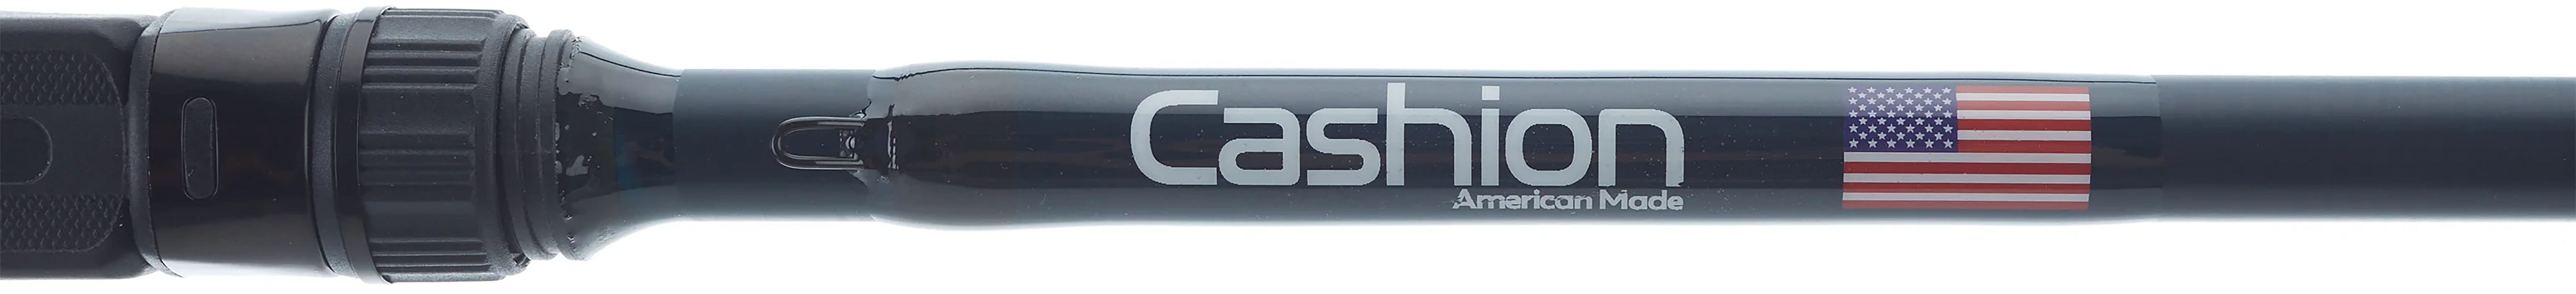 Cashion ELEMENT Series Casting Rods